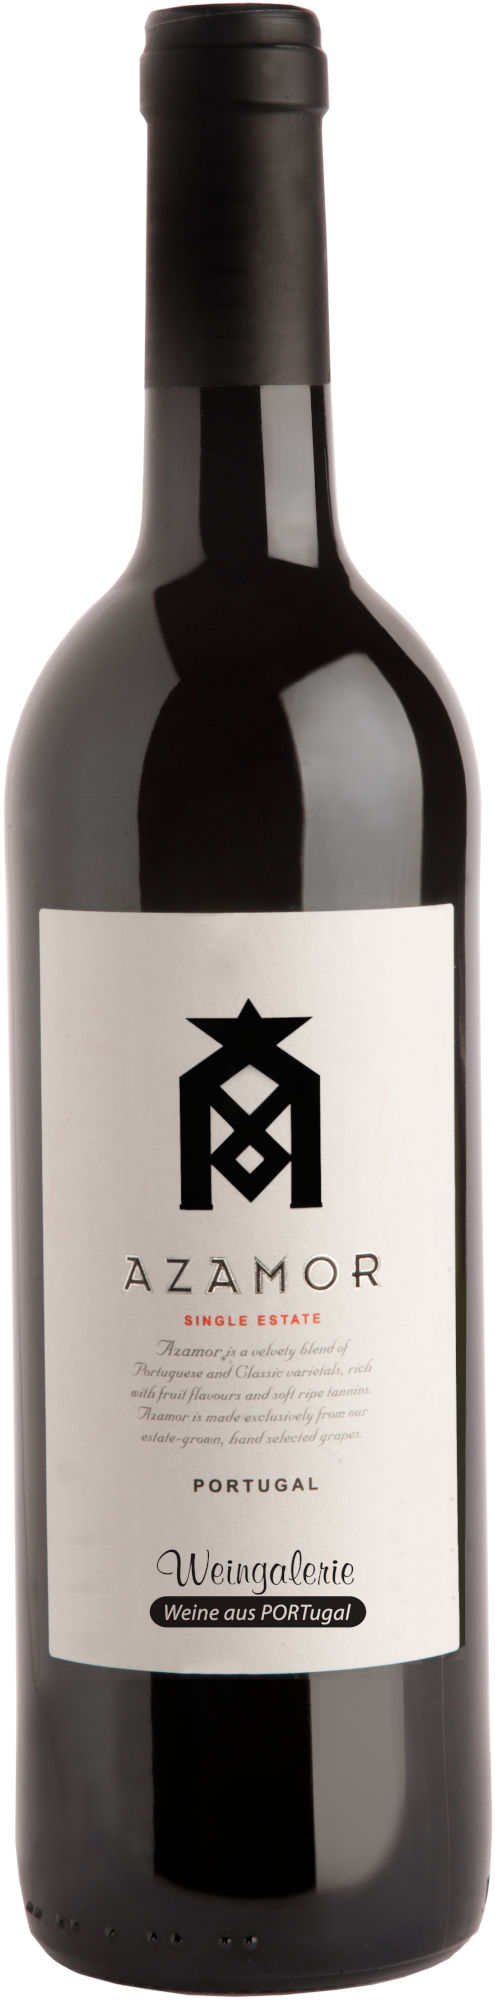 Azamor-Weingalerie-Edition